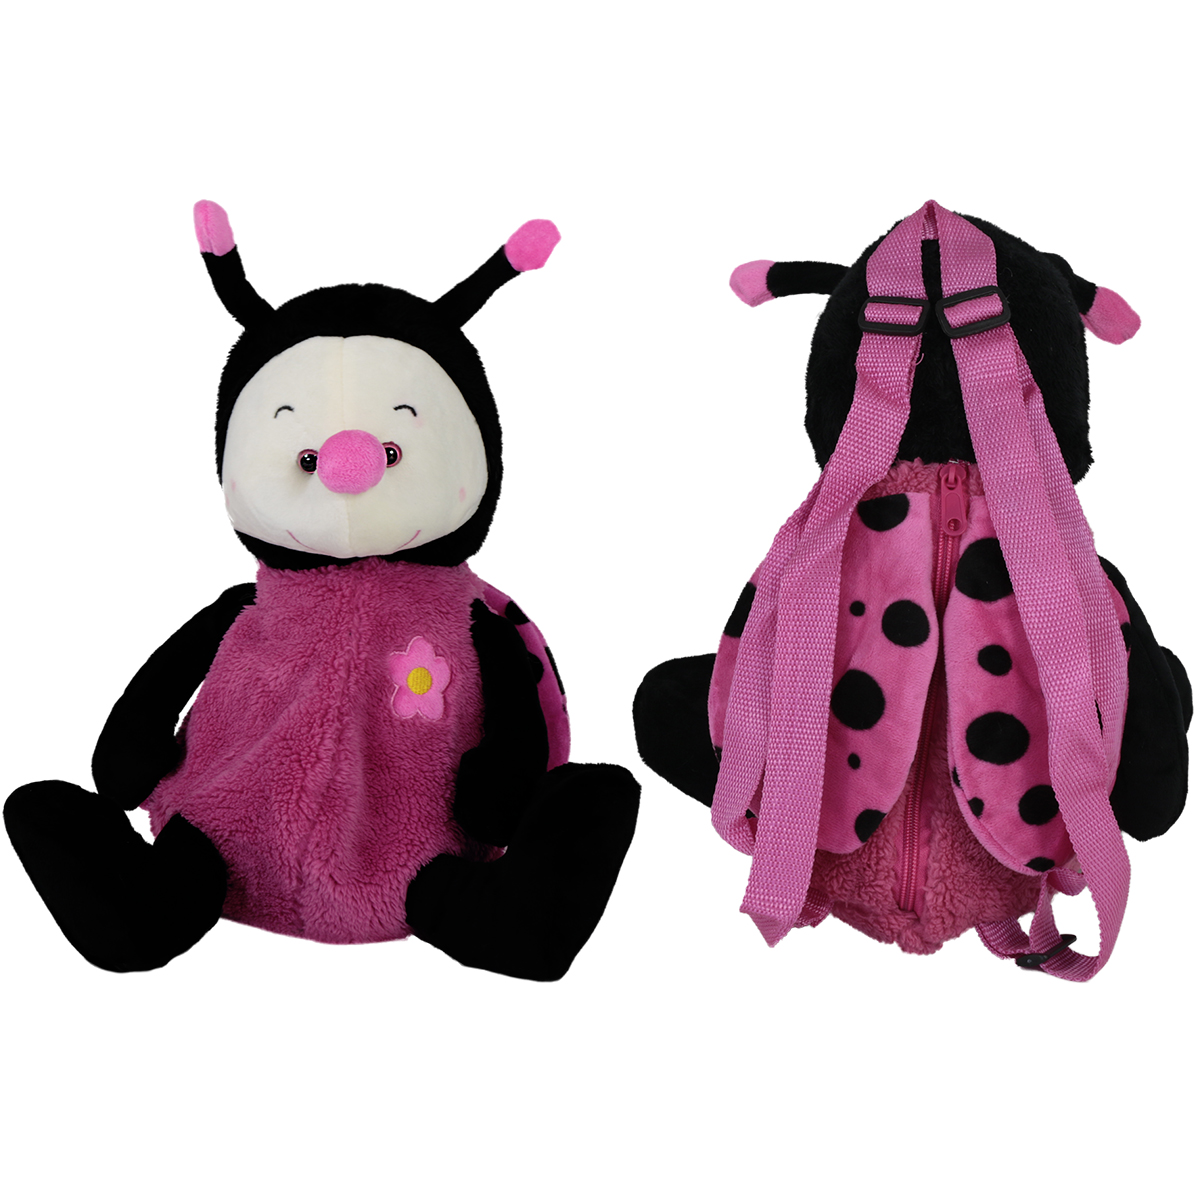 Backpack ladybug - Pink